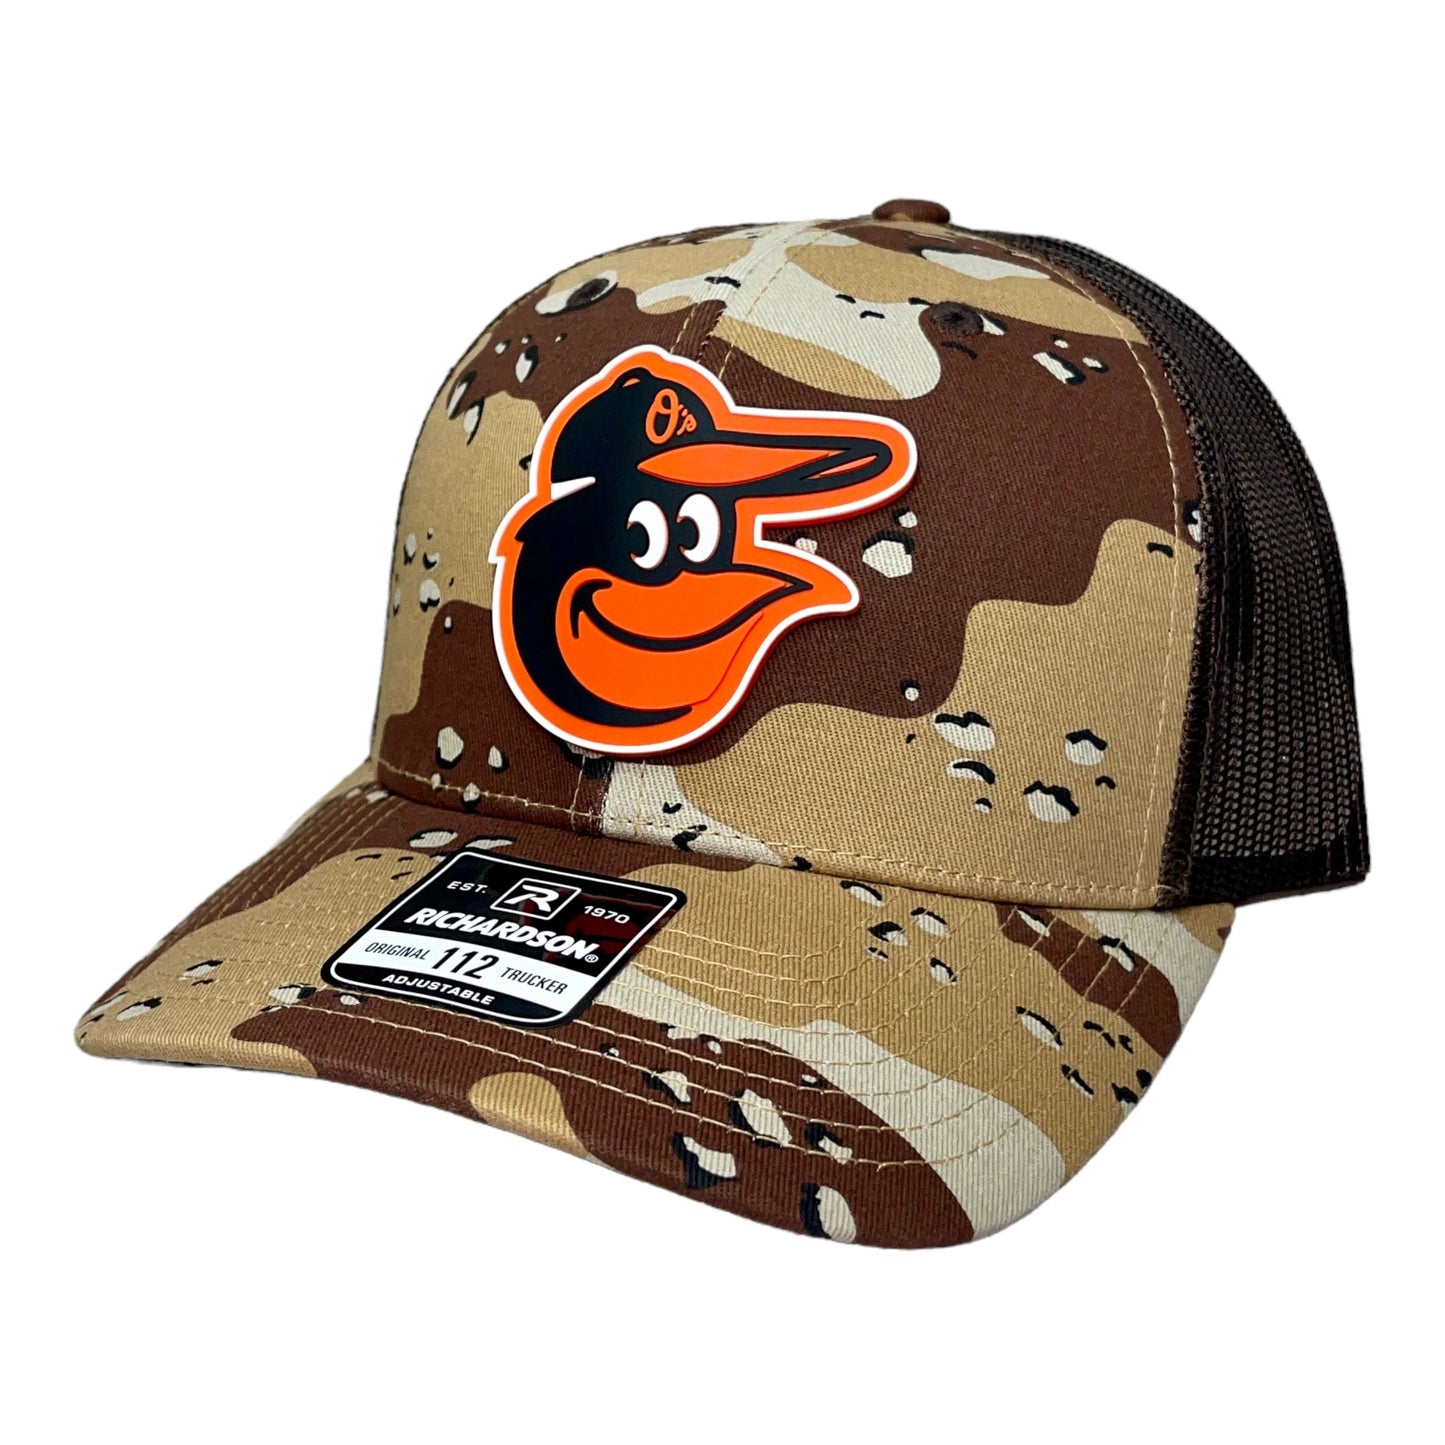 Baltimore Orioles 3D Snapback Trucker Hat- Desert Camo/ Brown